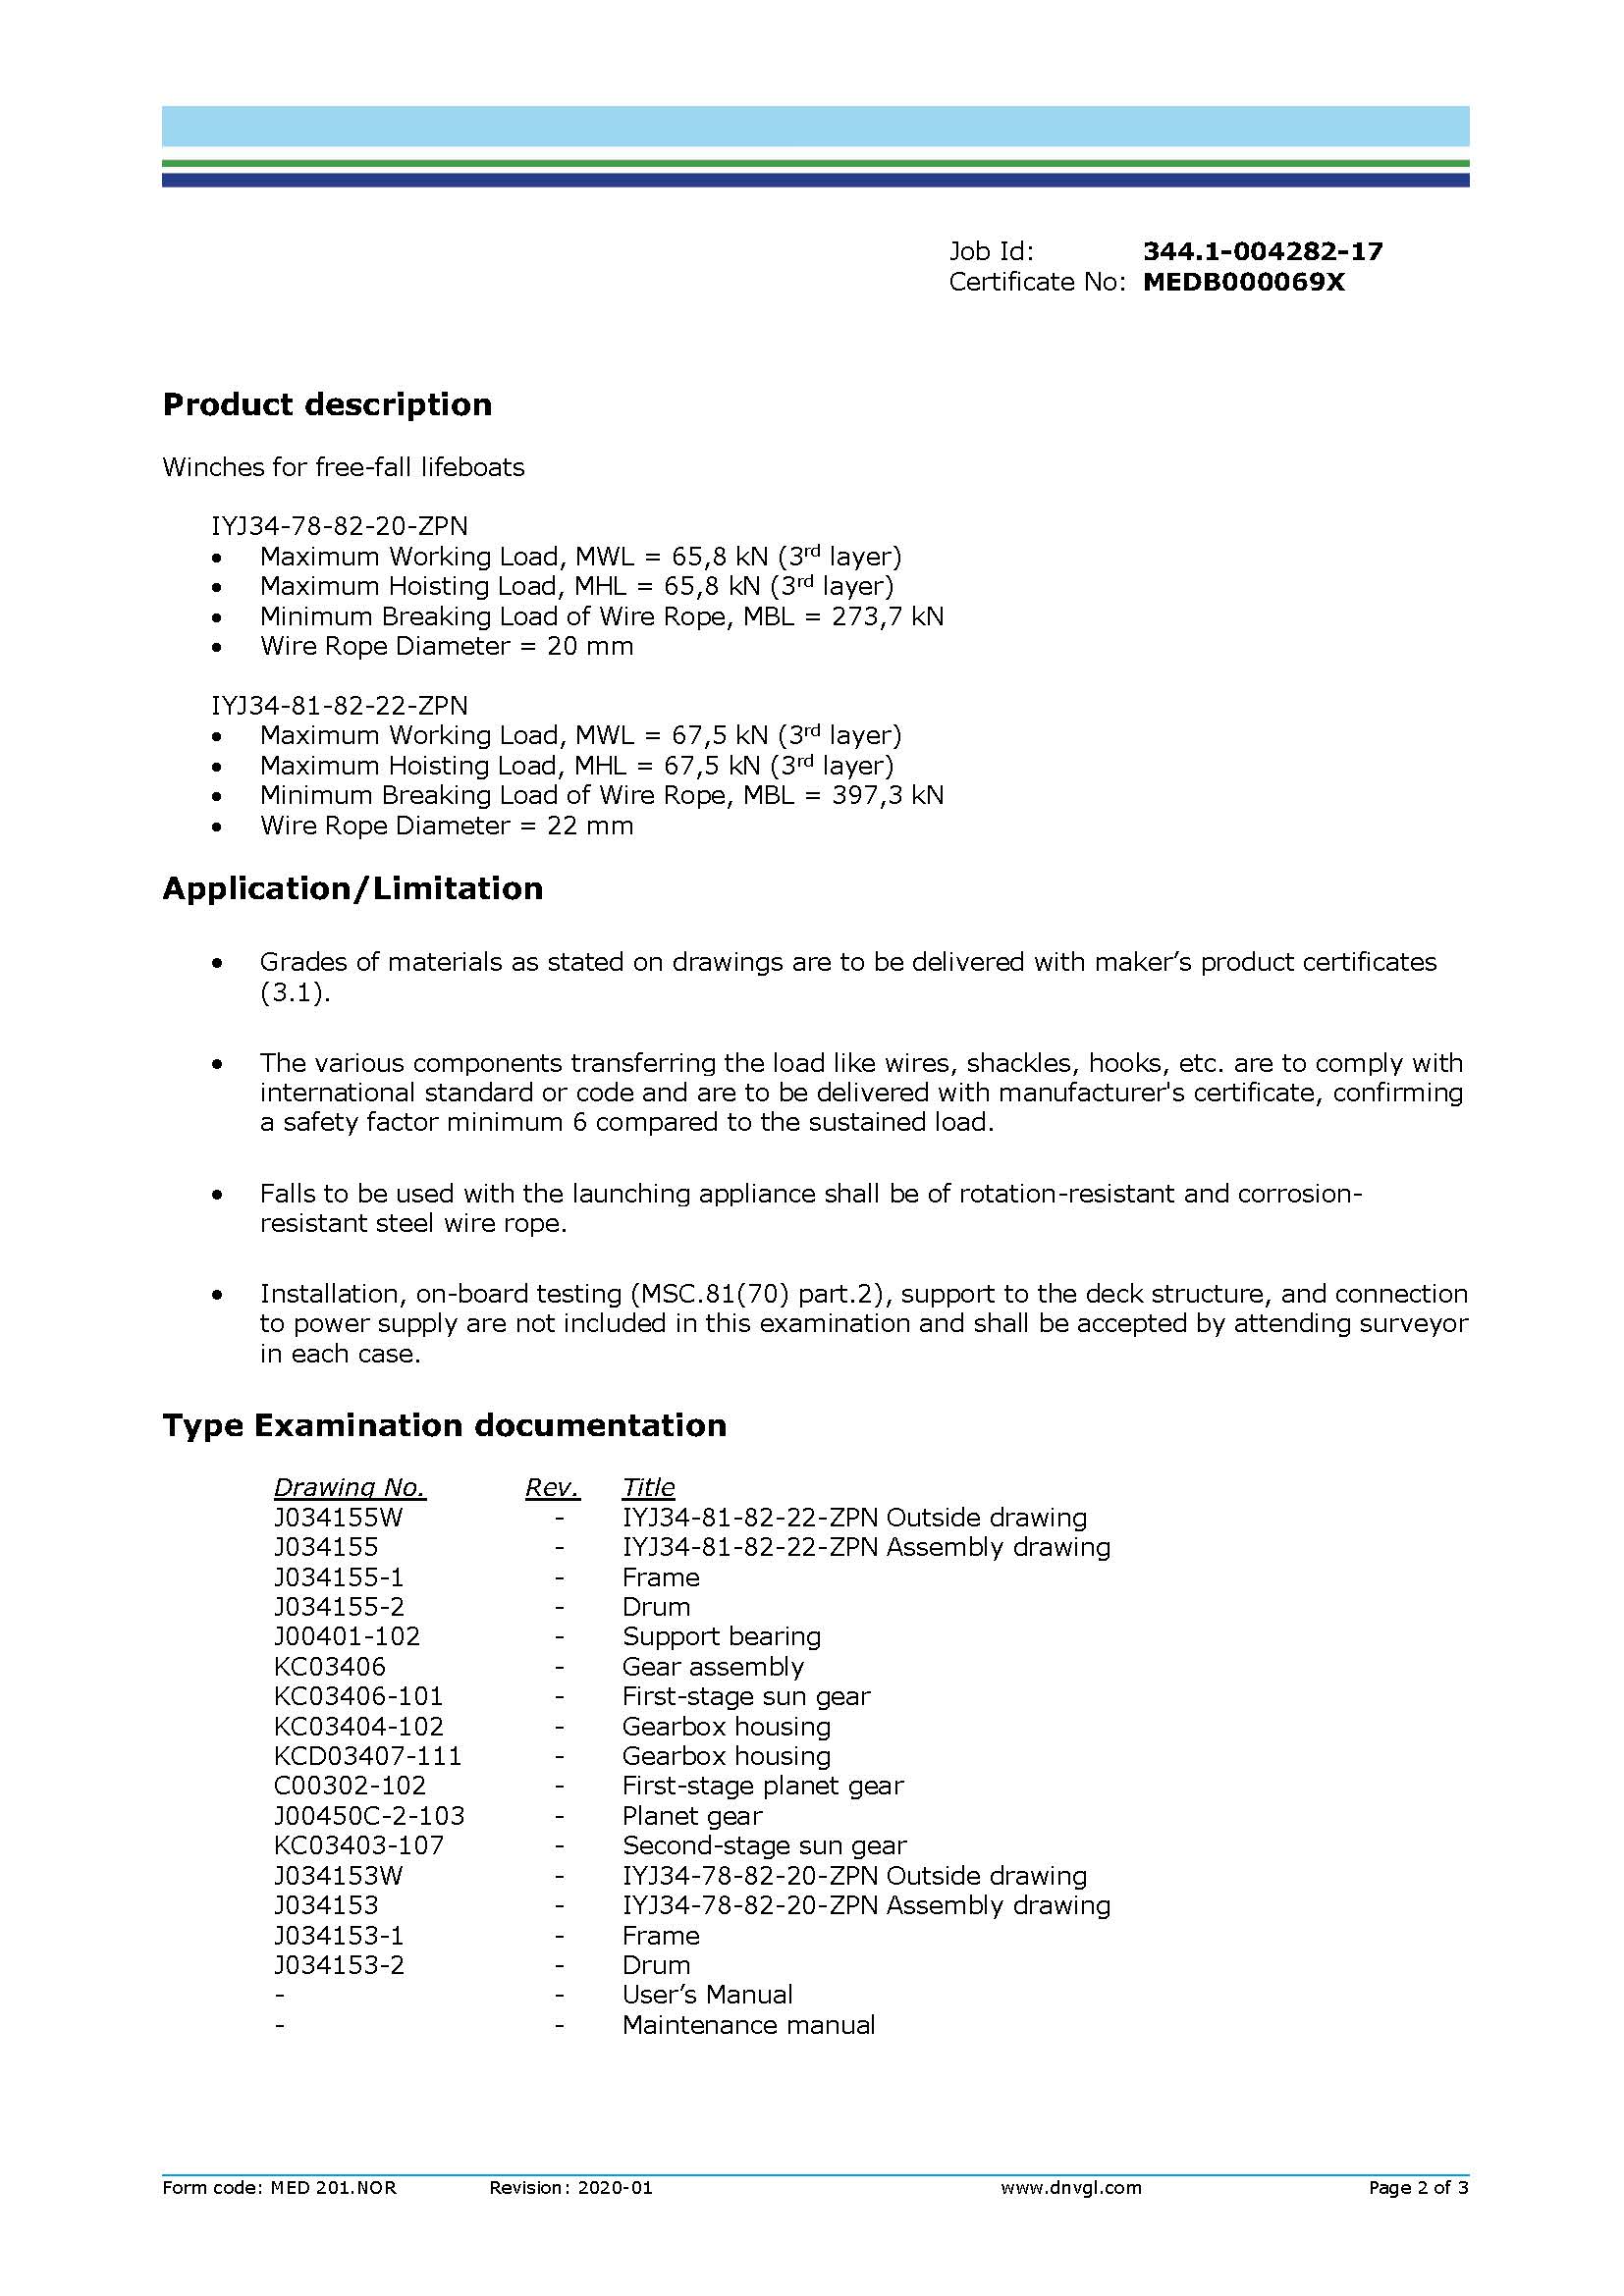 Certificado de tipo EC para cabrestante hidráulico IYJ34,2020_Page_2